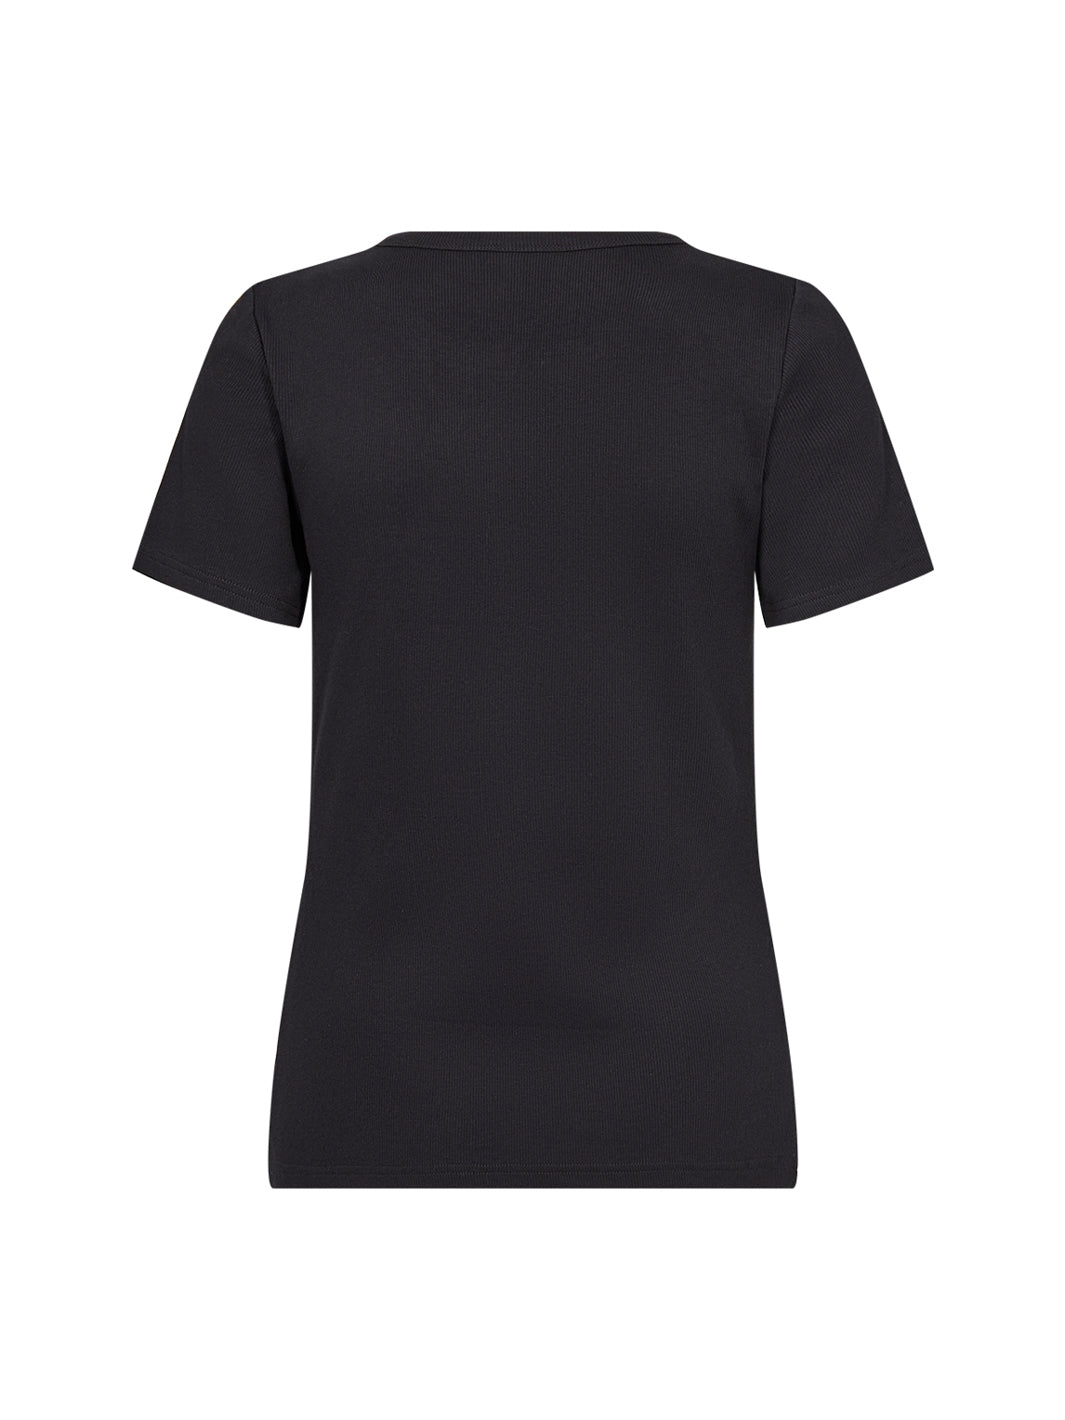 Soya Concept Mignon 3 t-shirt black - Online-Mode